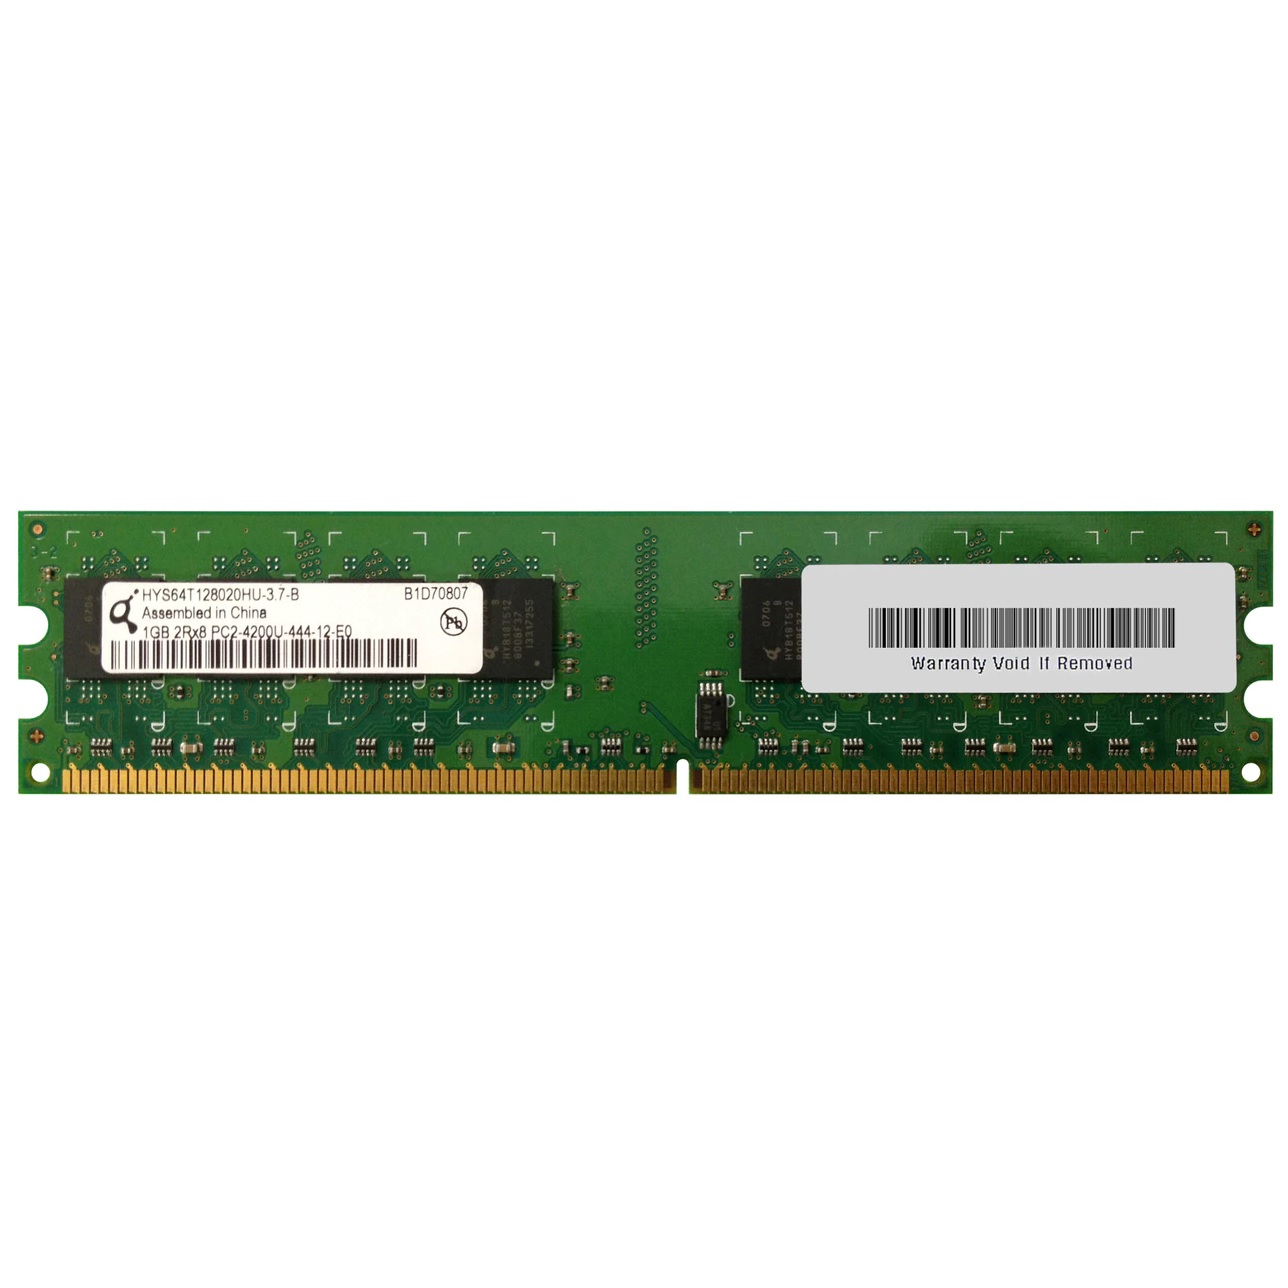 رم دسکتاپ DDR2 تک کاناله 533 مگاهرتز CL4 کیوموندا مدل HYS64T128020HU-3-7-B ظرفیت 1 گیگابایت